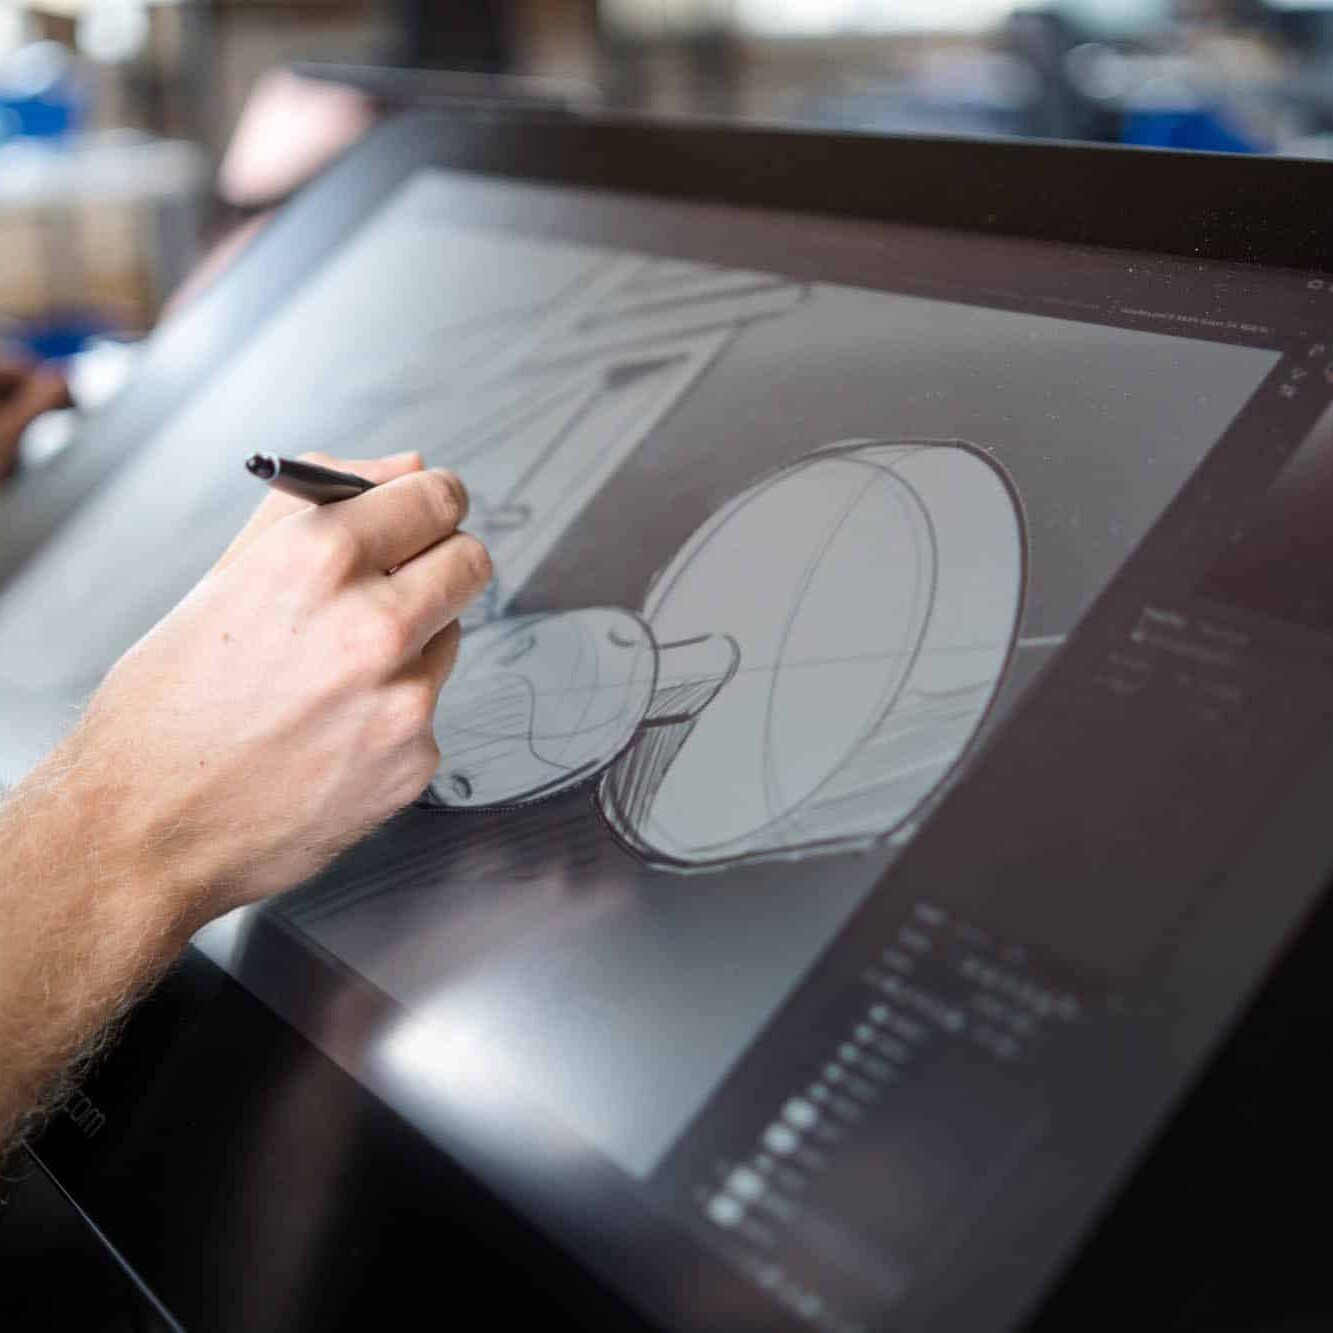 Industrial Designer doing a digital sketch